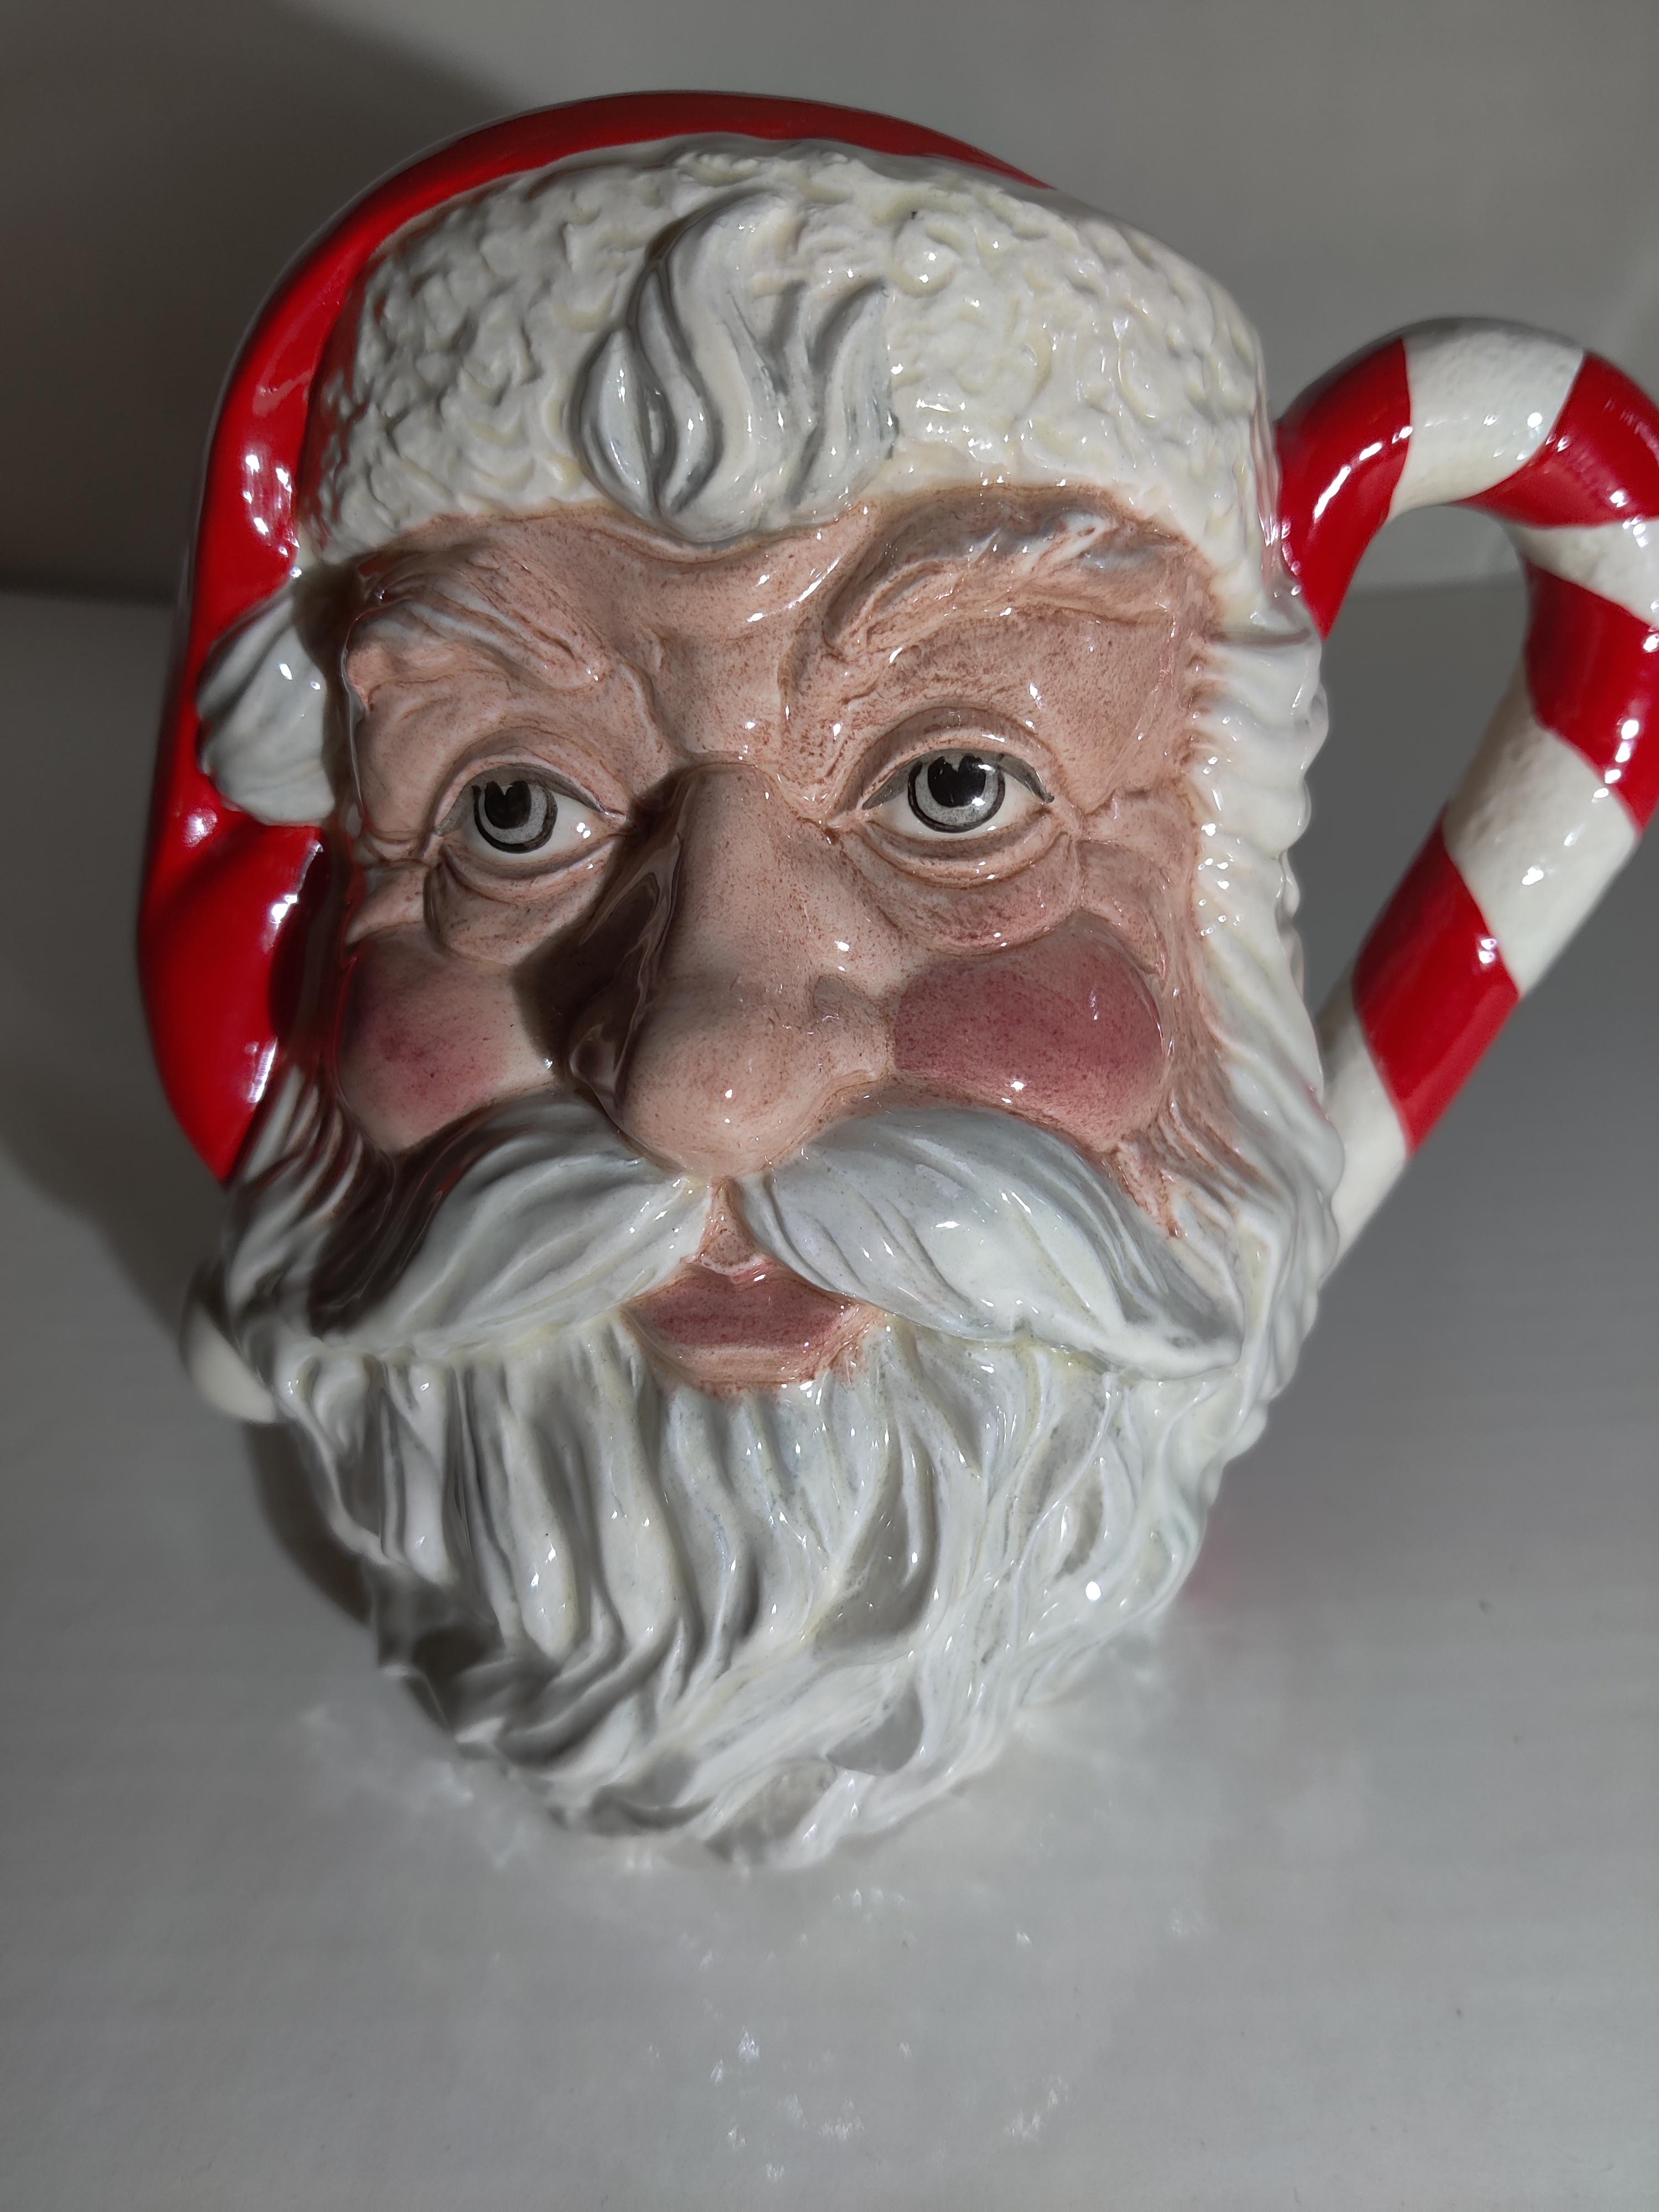 Royal D0ulton Santa Claus Character Jug
D6793
Hand made and decorated
Designer Michael Abberley
